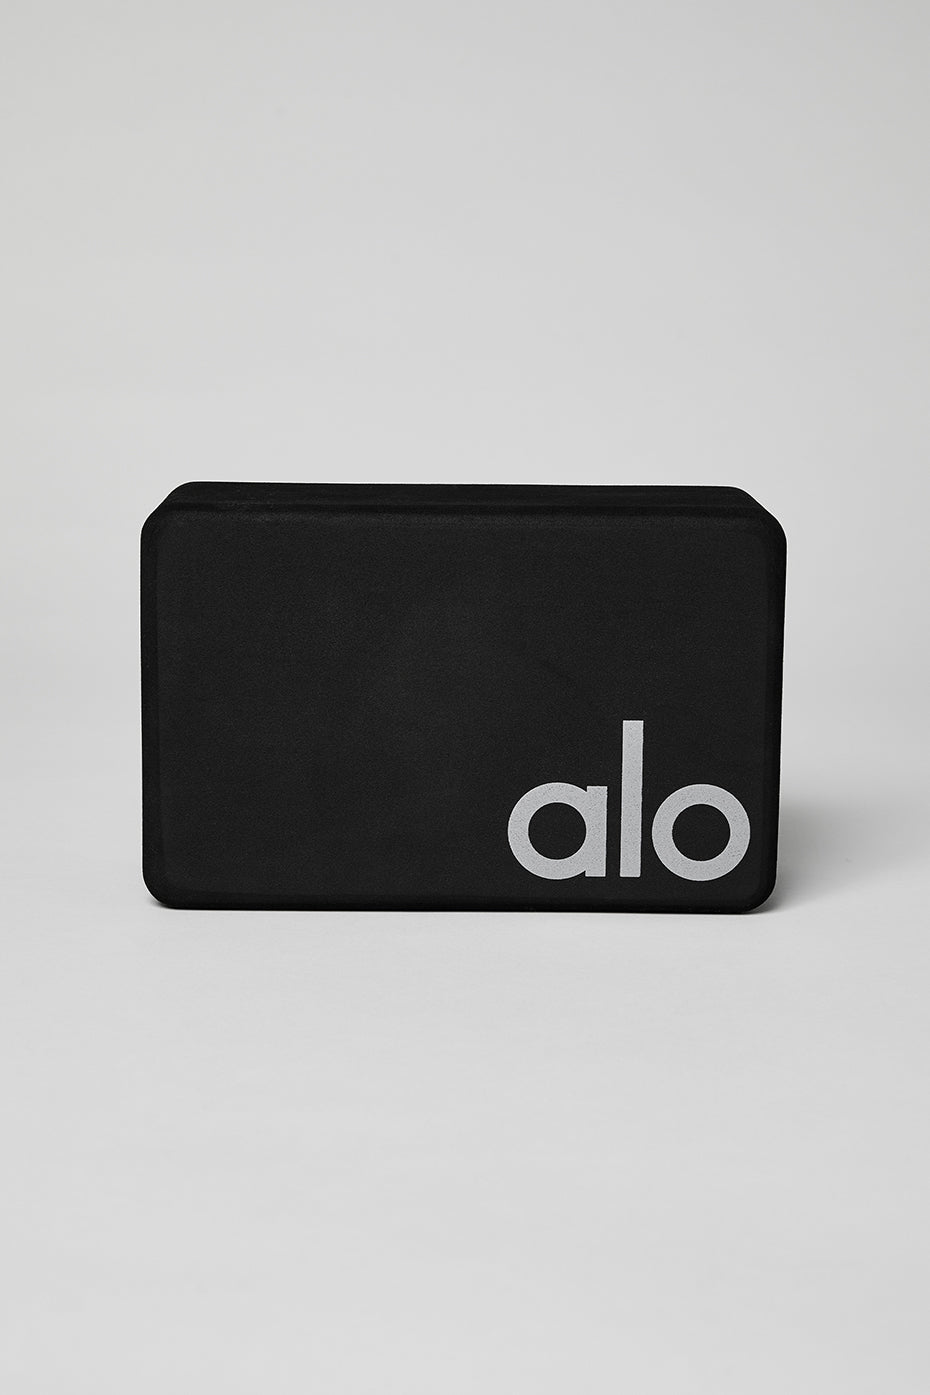 Alo Yoga Sticker Vinyl Bumper Sticker Decal Waterproof 5